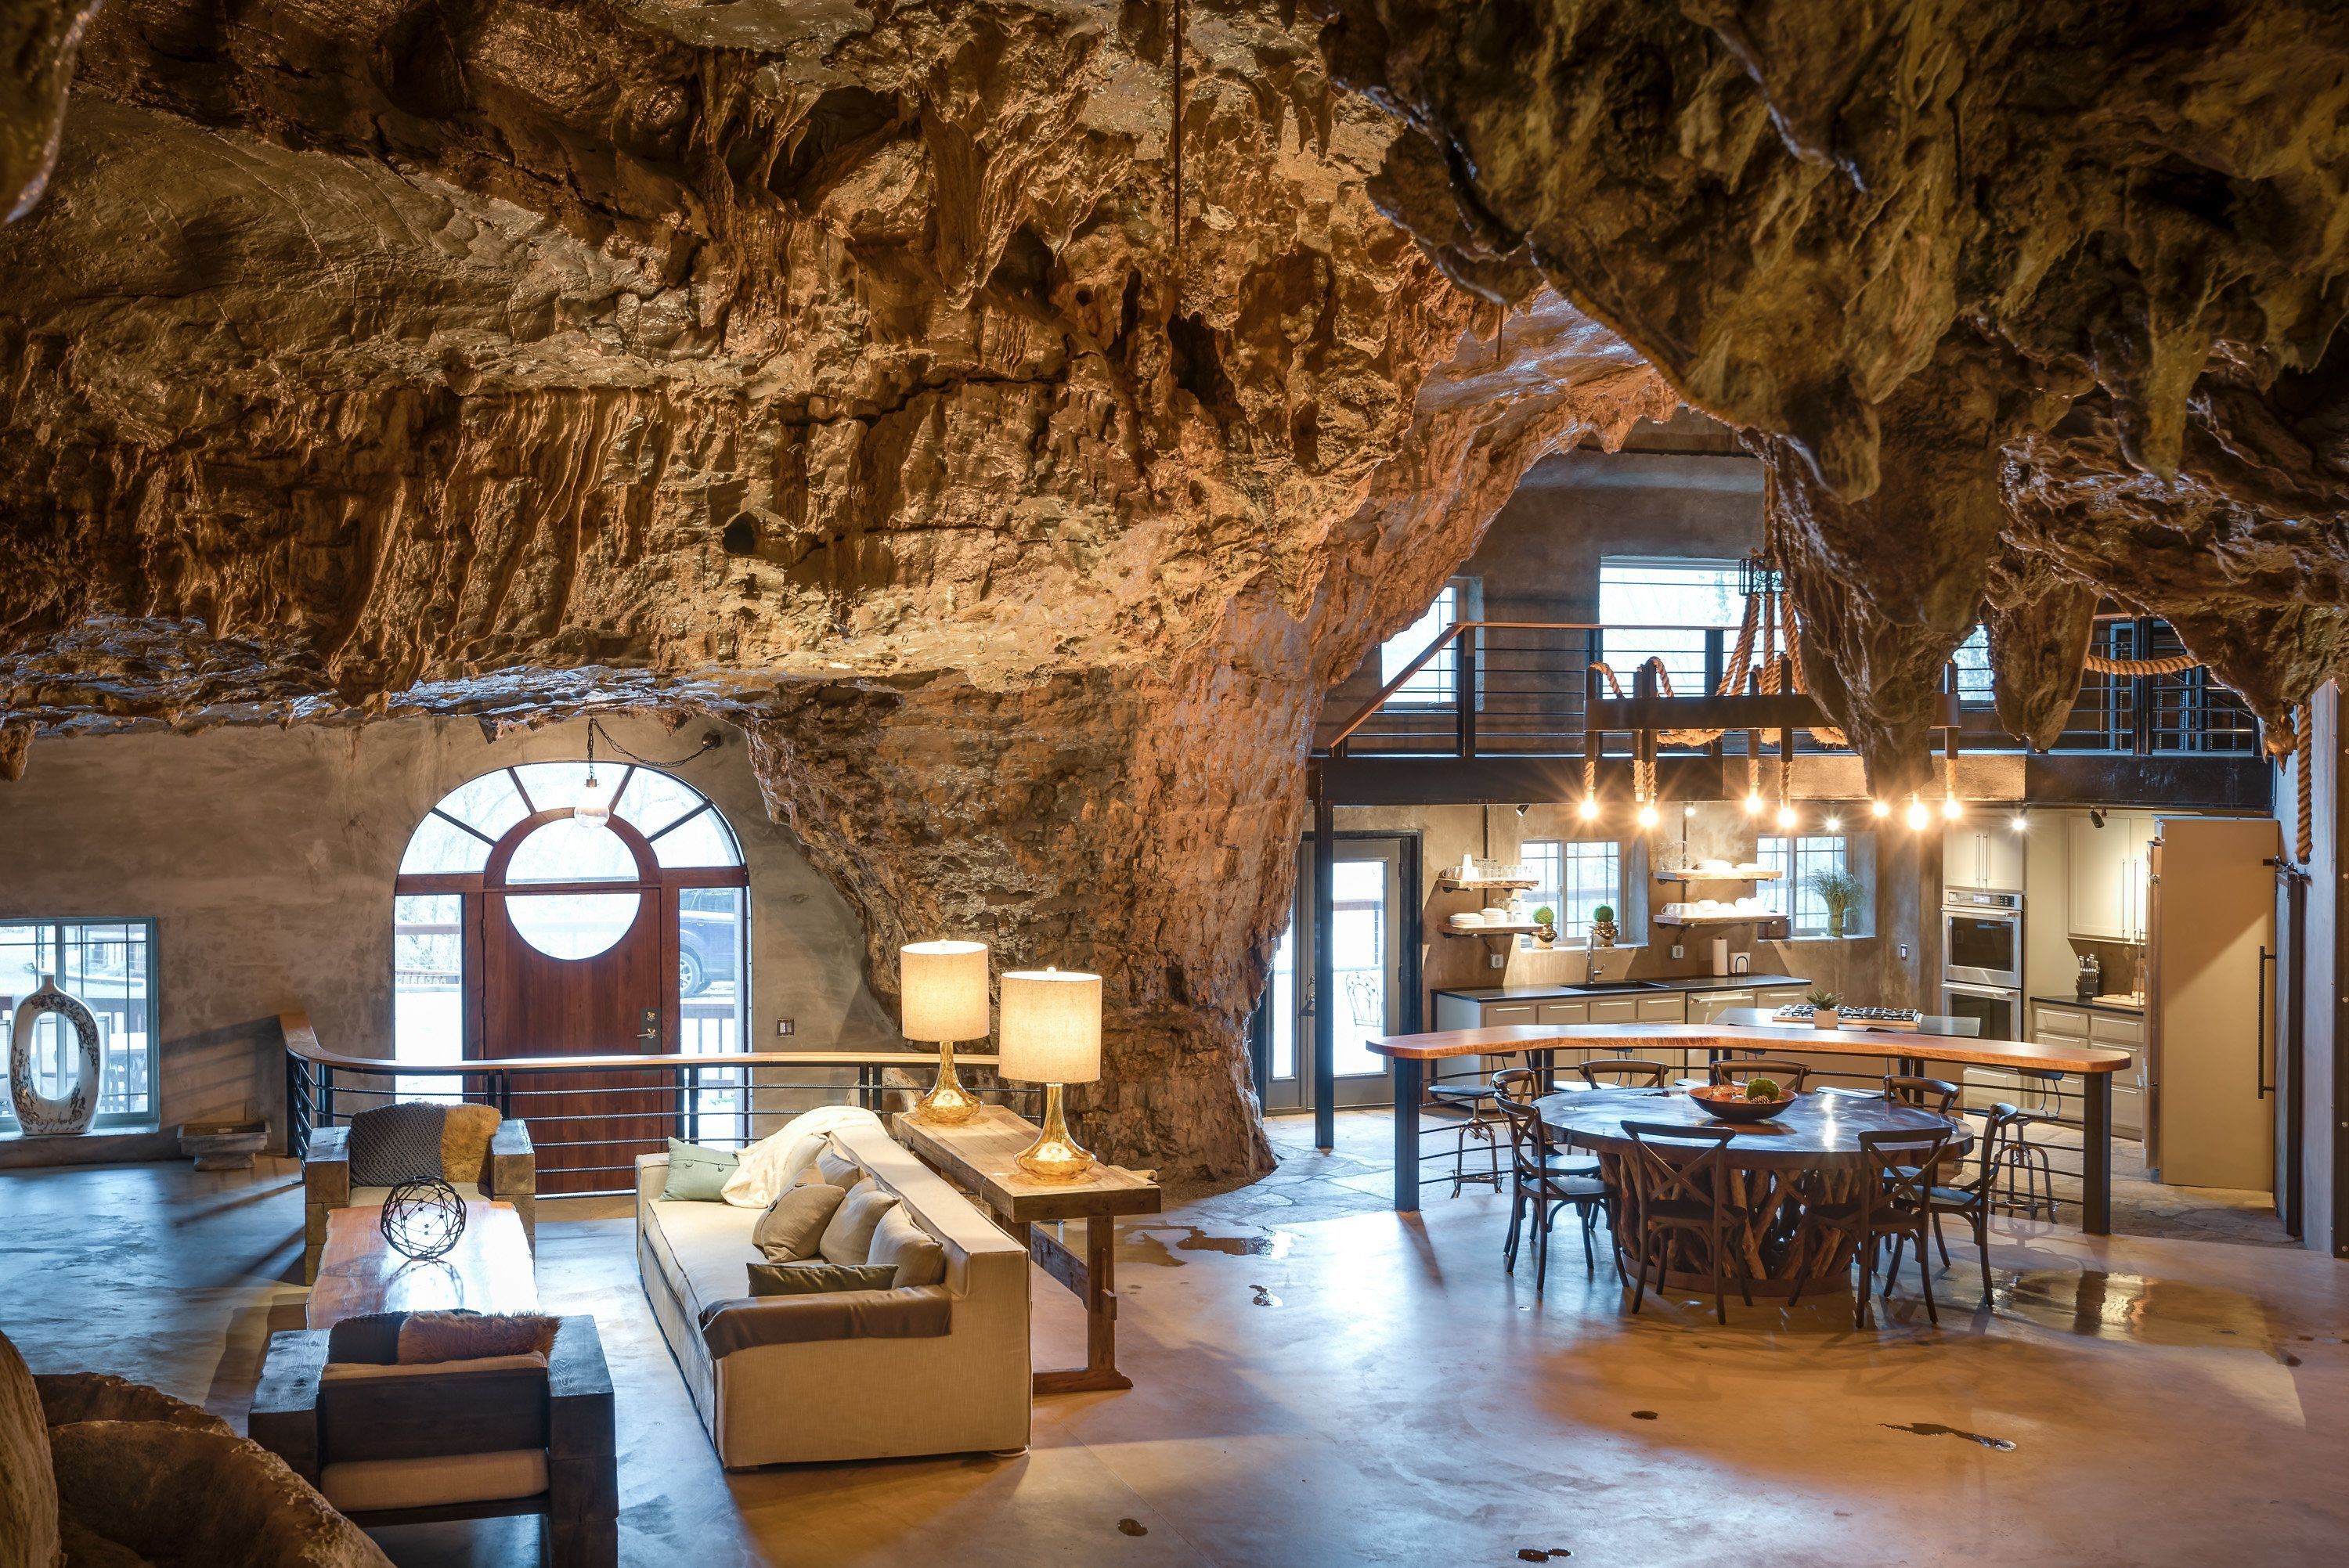 Скала на потолке. Гостиница Beckham Creek Cave Lodge. Beckham Creek Cave Lodge, США, Арканзас. Пещерный дворец Cave Palace Ranch, Юта, США. Дом в пещере.